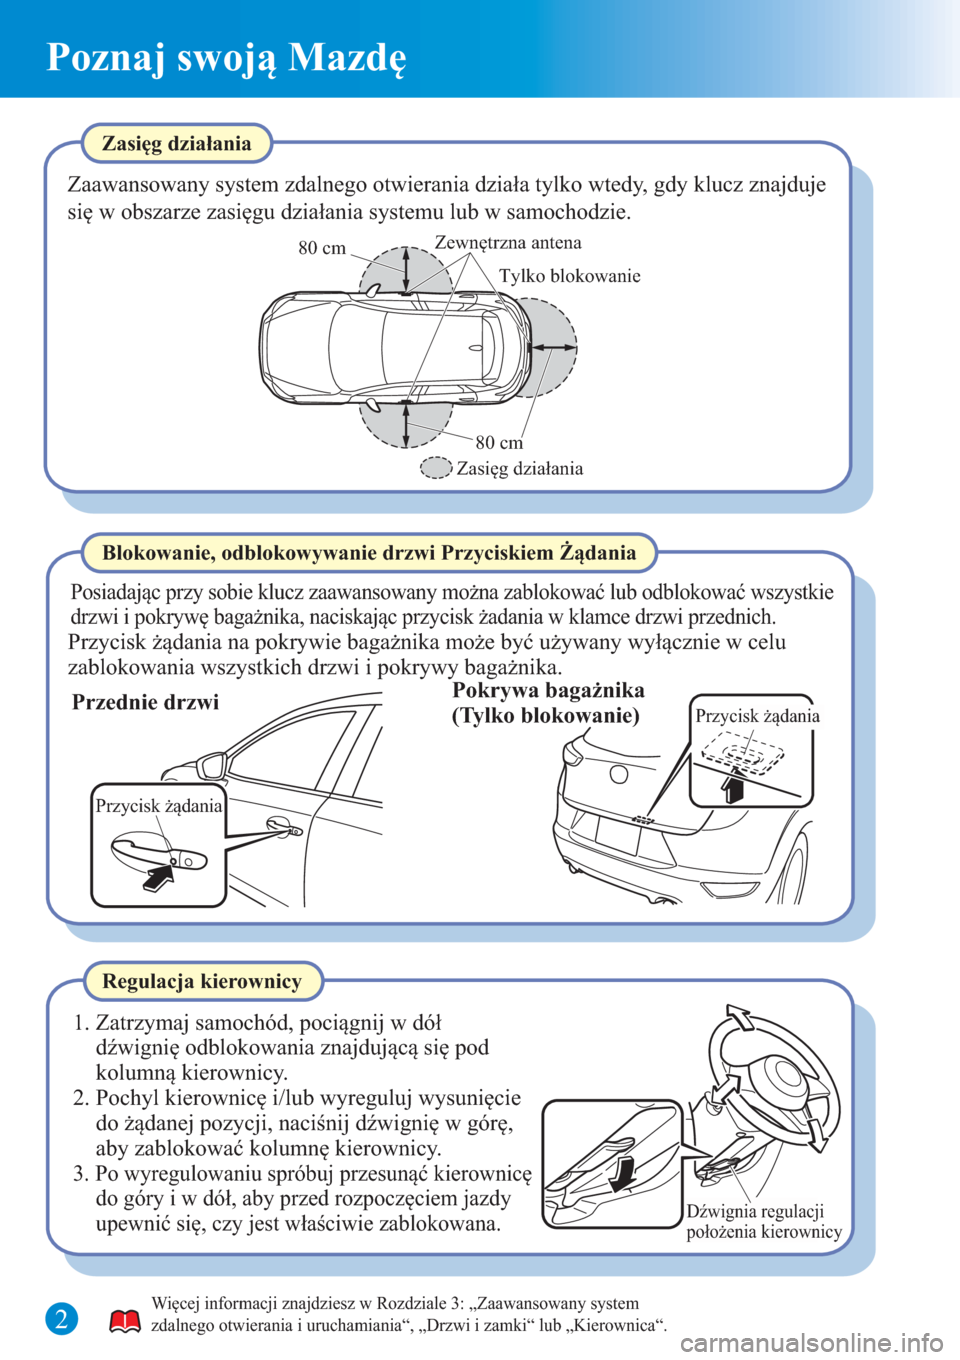 MAZDA MODEL CX-3 2015  Krótki Przewodnik (in Polish)  Poznaj swoją Mazdę
Zasięg działania
Zaawansowany system zdalnego otwierania działa tylko wtedy, gdy klucz znajduje 
się w obszarze zasięgu działania systemu lub w samochodzie.
Posiadając przy